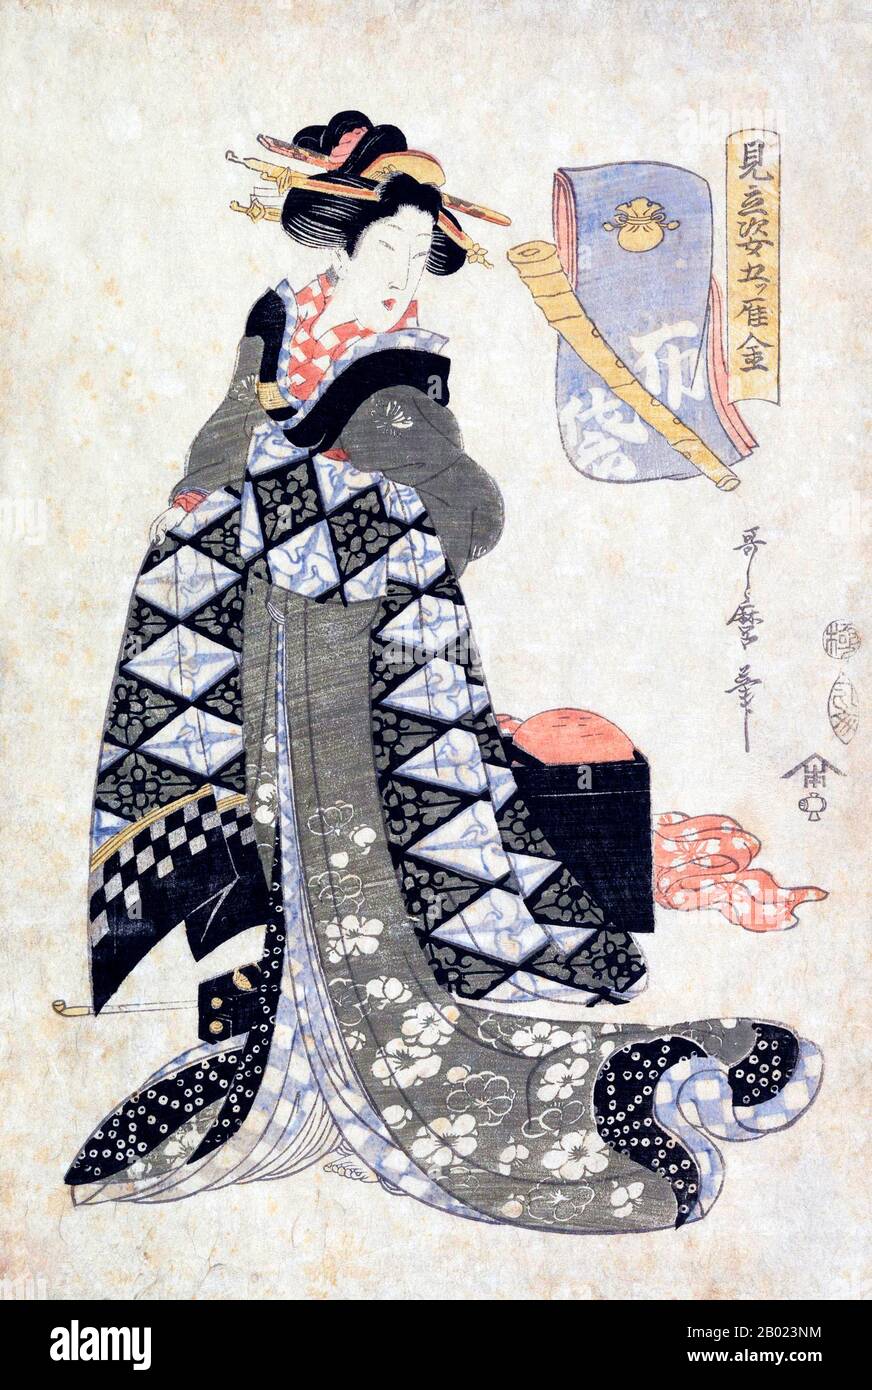 Kitagawa Utamaro (ca. 1753 - 31 ottobre 1806) è stato un pittore giapponese, considerato uno dei più grandi artisti di stampe in legno (ukiyo-e). È conosciuto soprattutto per i suoi studi magistralmente composti di donne, noto come bijinga. Ha anche prodotto studi sulla natura, particolarmente illustrati libri di insetti. Dopo la morte di Utamaro, il suo allievo, Koikawa Shunchō, continuò a produrre stampe nello stile del suo mentore e prese il controllo della gō, Utamaro, fino al 1820. Queste stampe, prodotte durante quel periodo di quattordici anni come se Utamaro fosse l'artista, ora sono chiamate opera di Ut Foto Stock